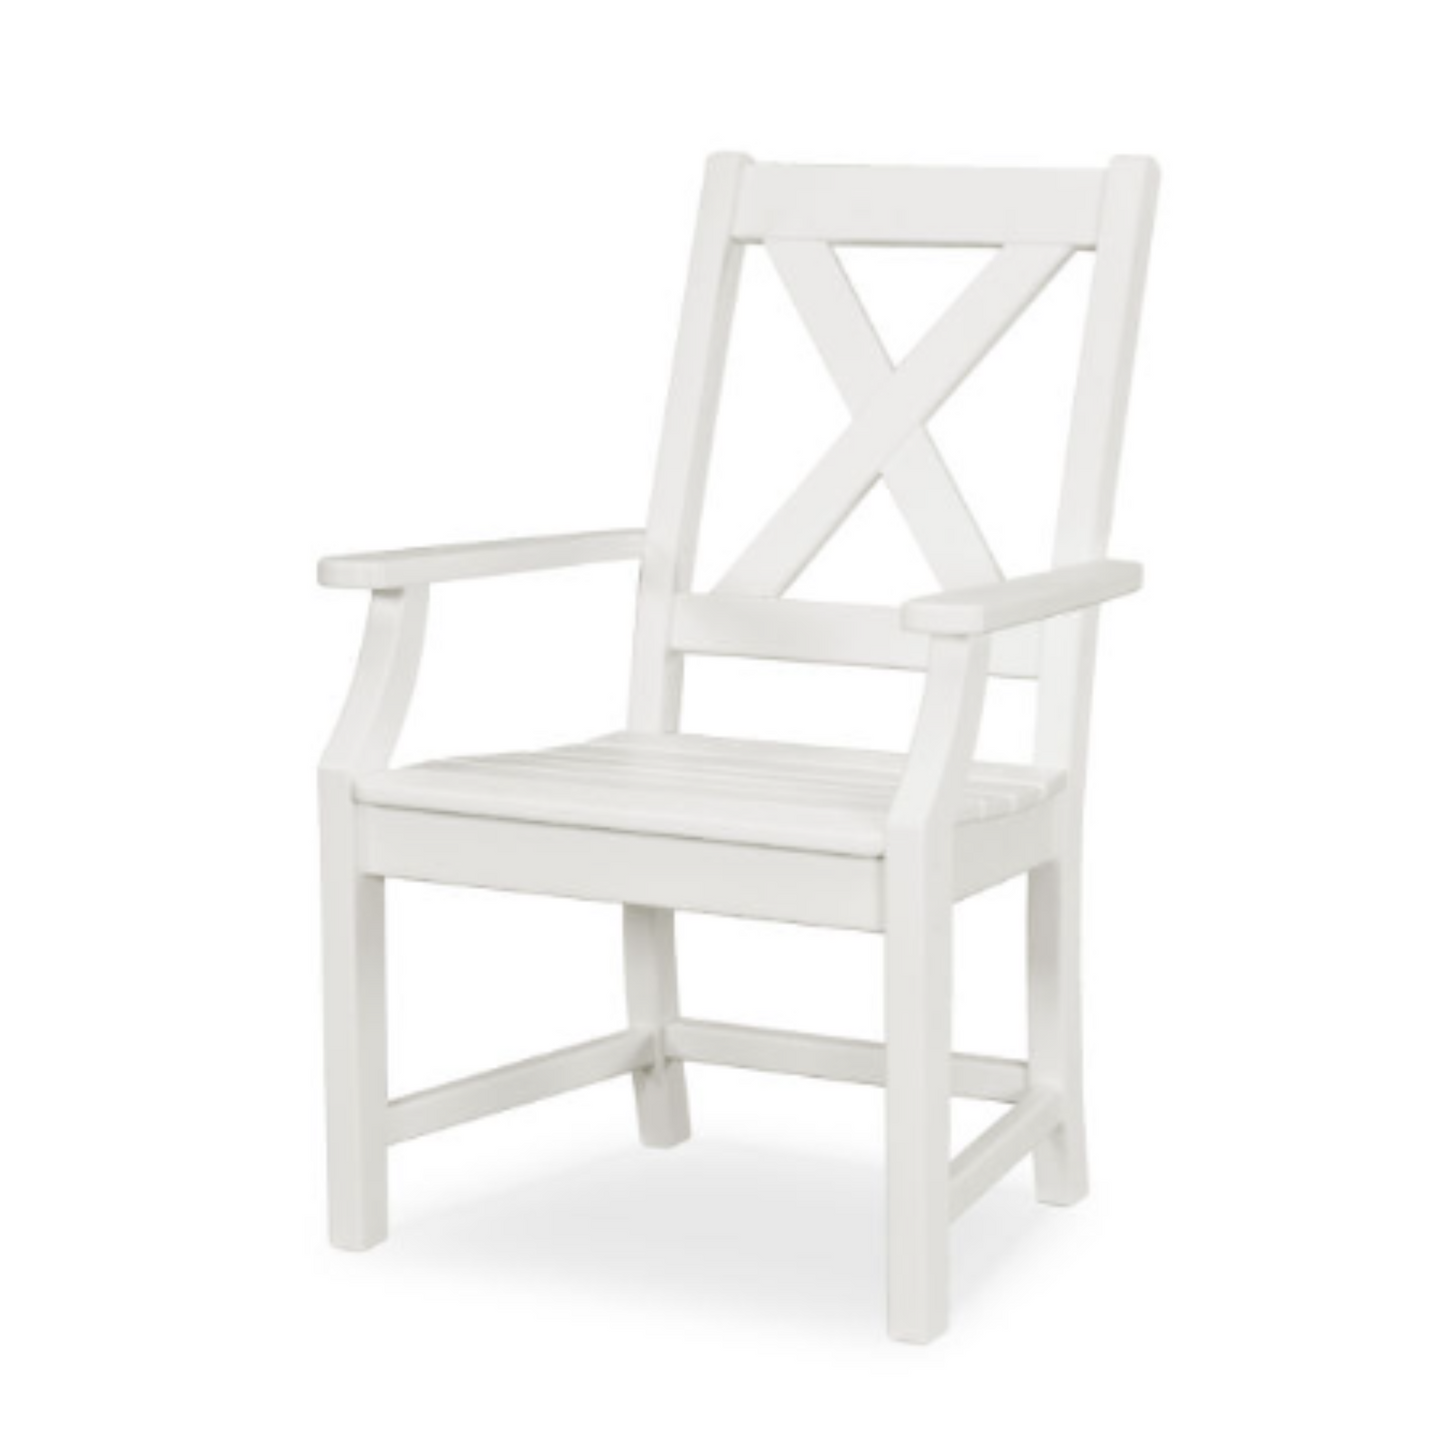 Polywood Braxton Dining Arm Chair